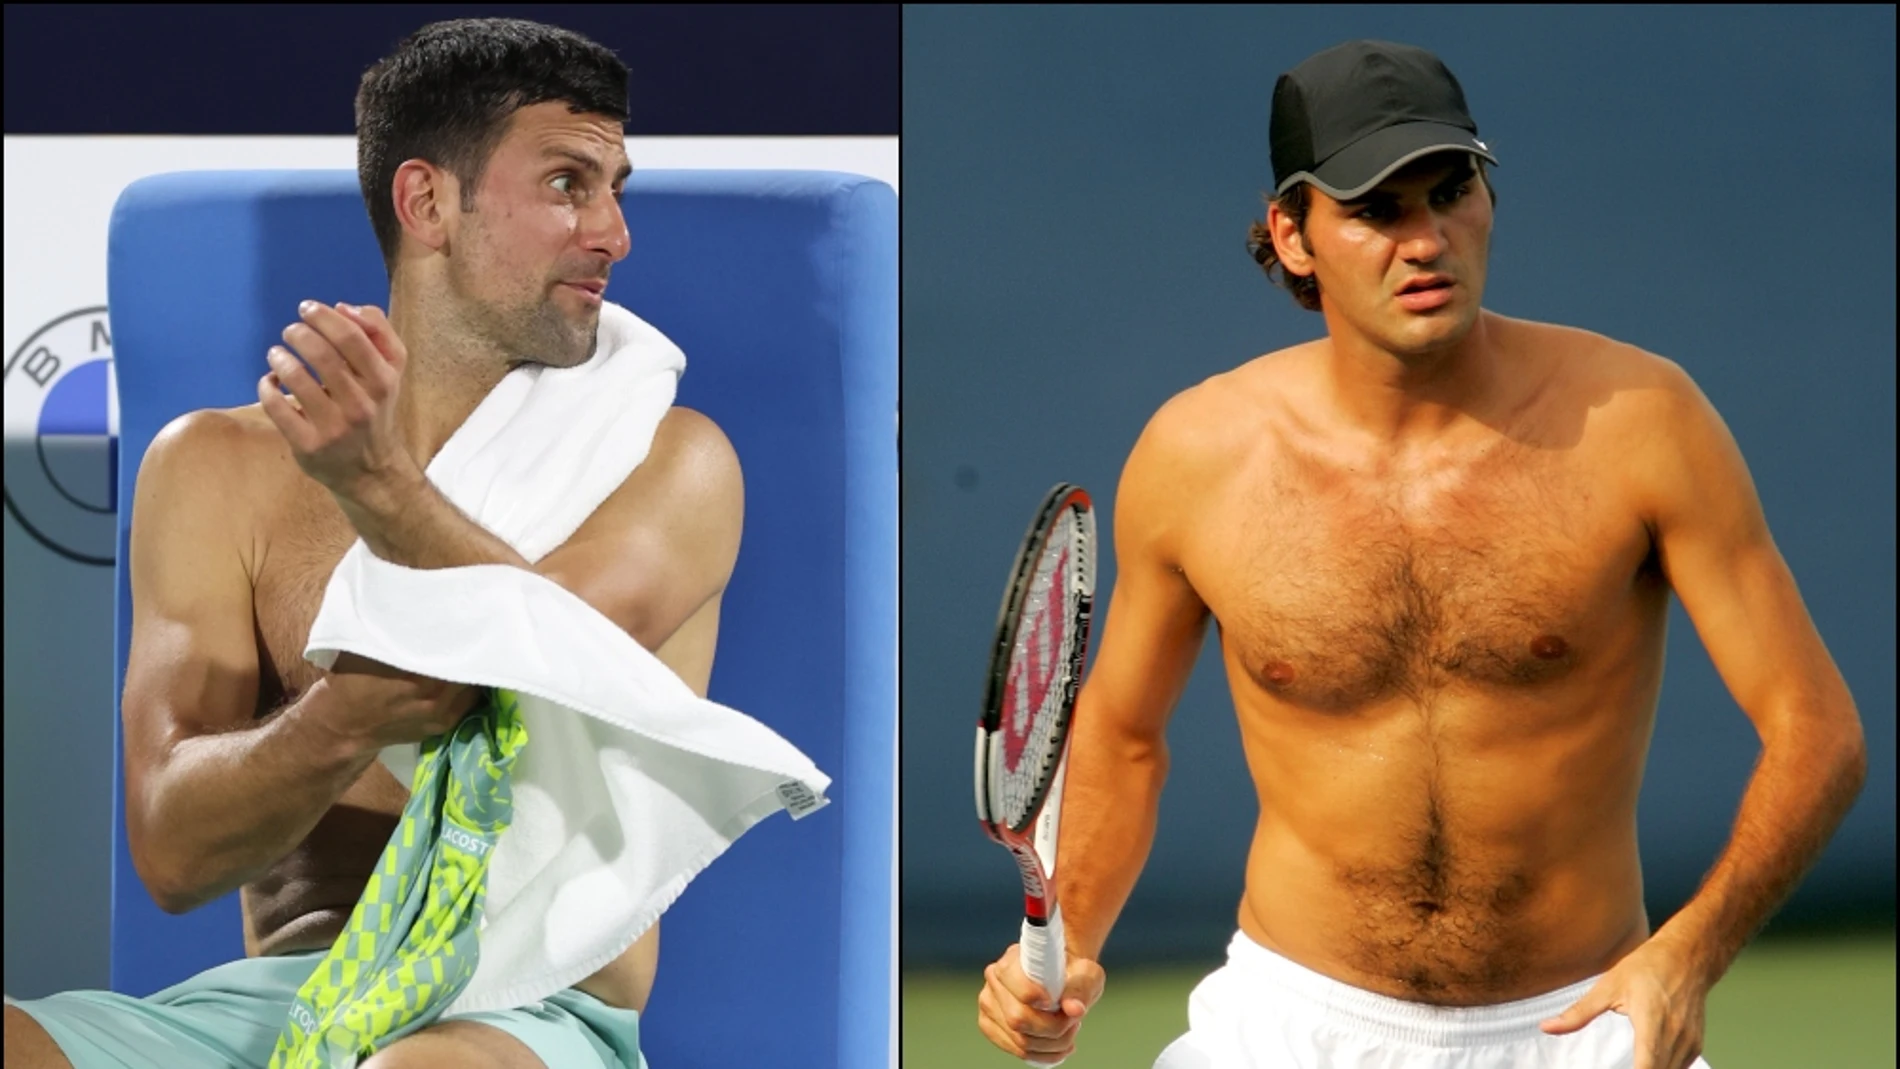 El físico de Djokovic comparado con el de Federer por una campeona olímpica 